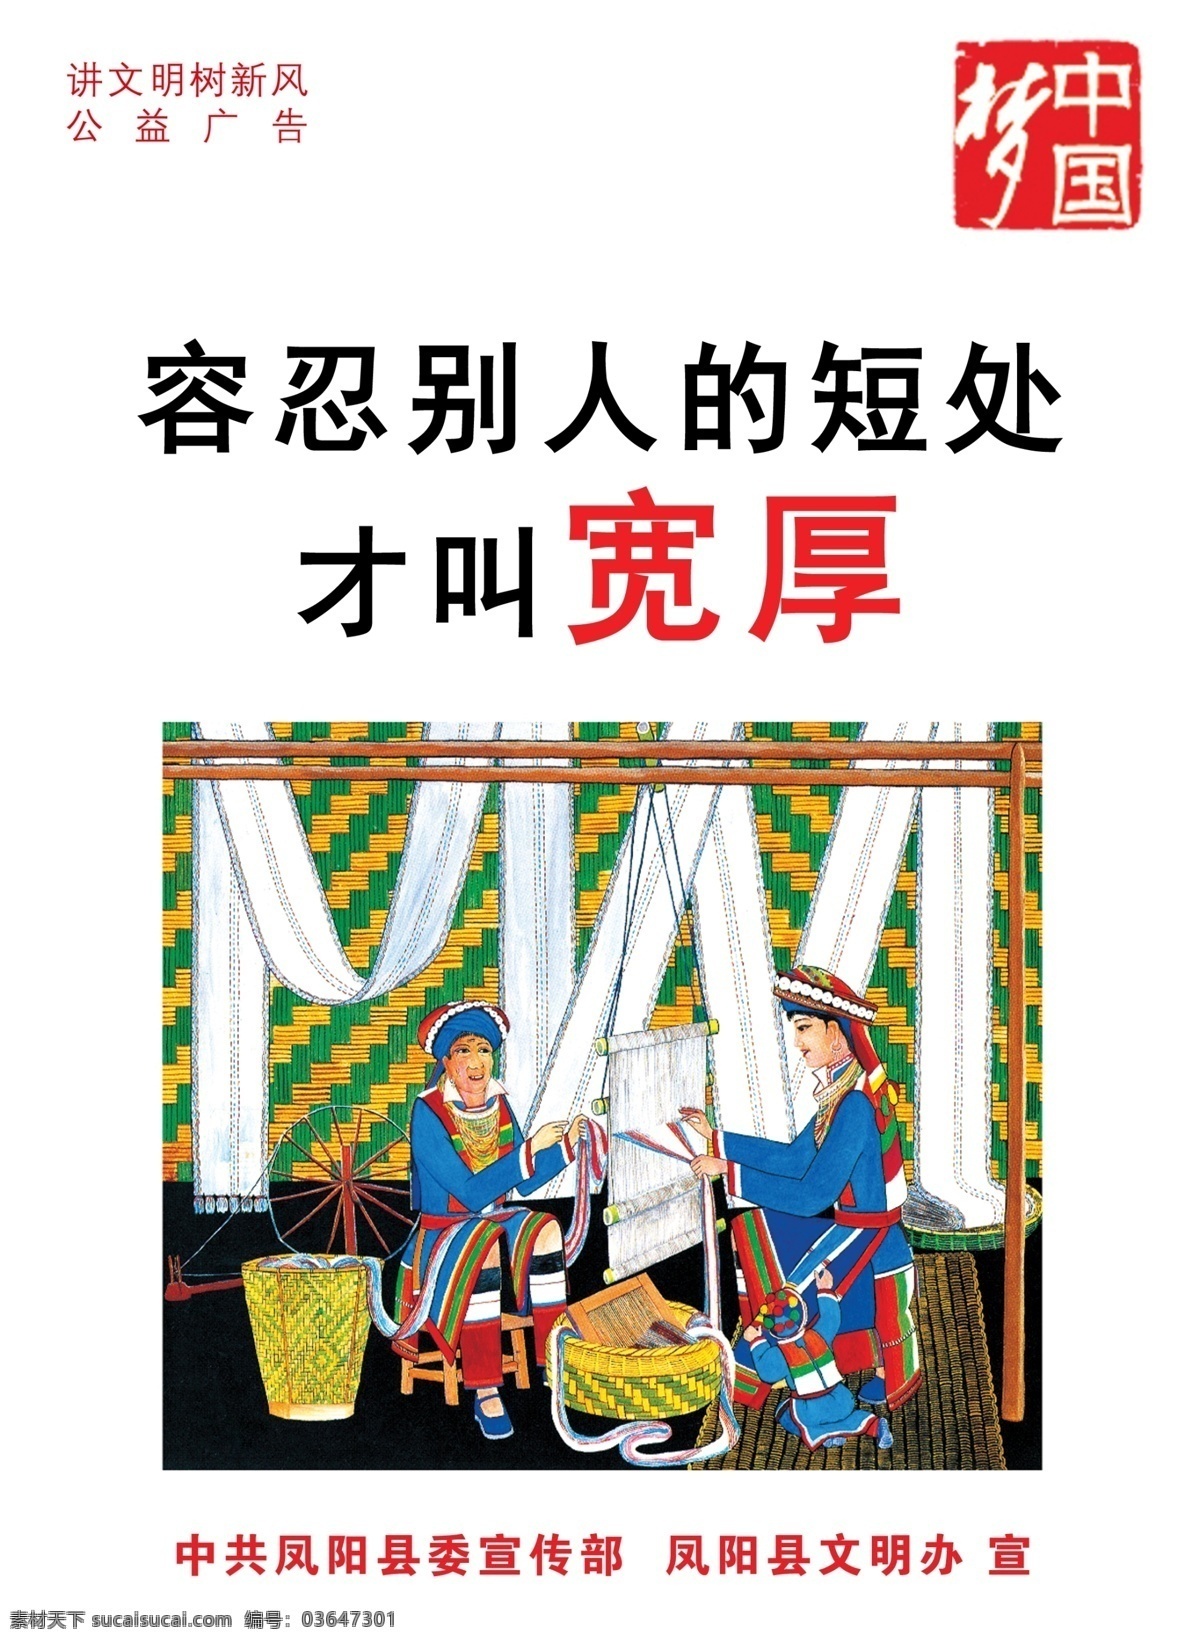 中国 梦 公益 海报 中国梦 宽厚 围挡 宣传 展牌 道化师 文明 民族 织布 容忍 广告设计模板 源文件